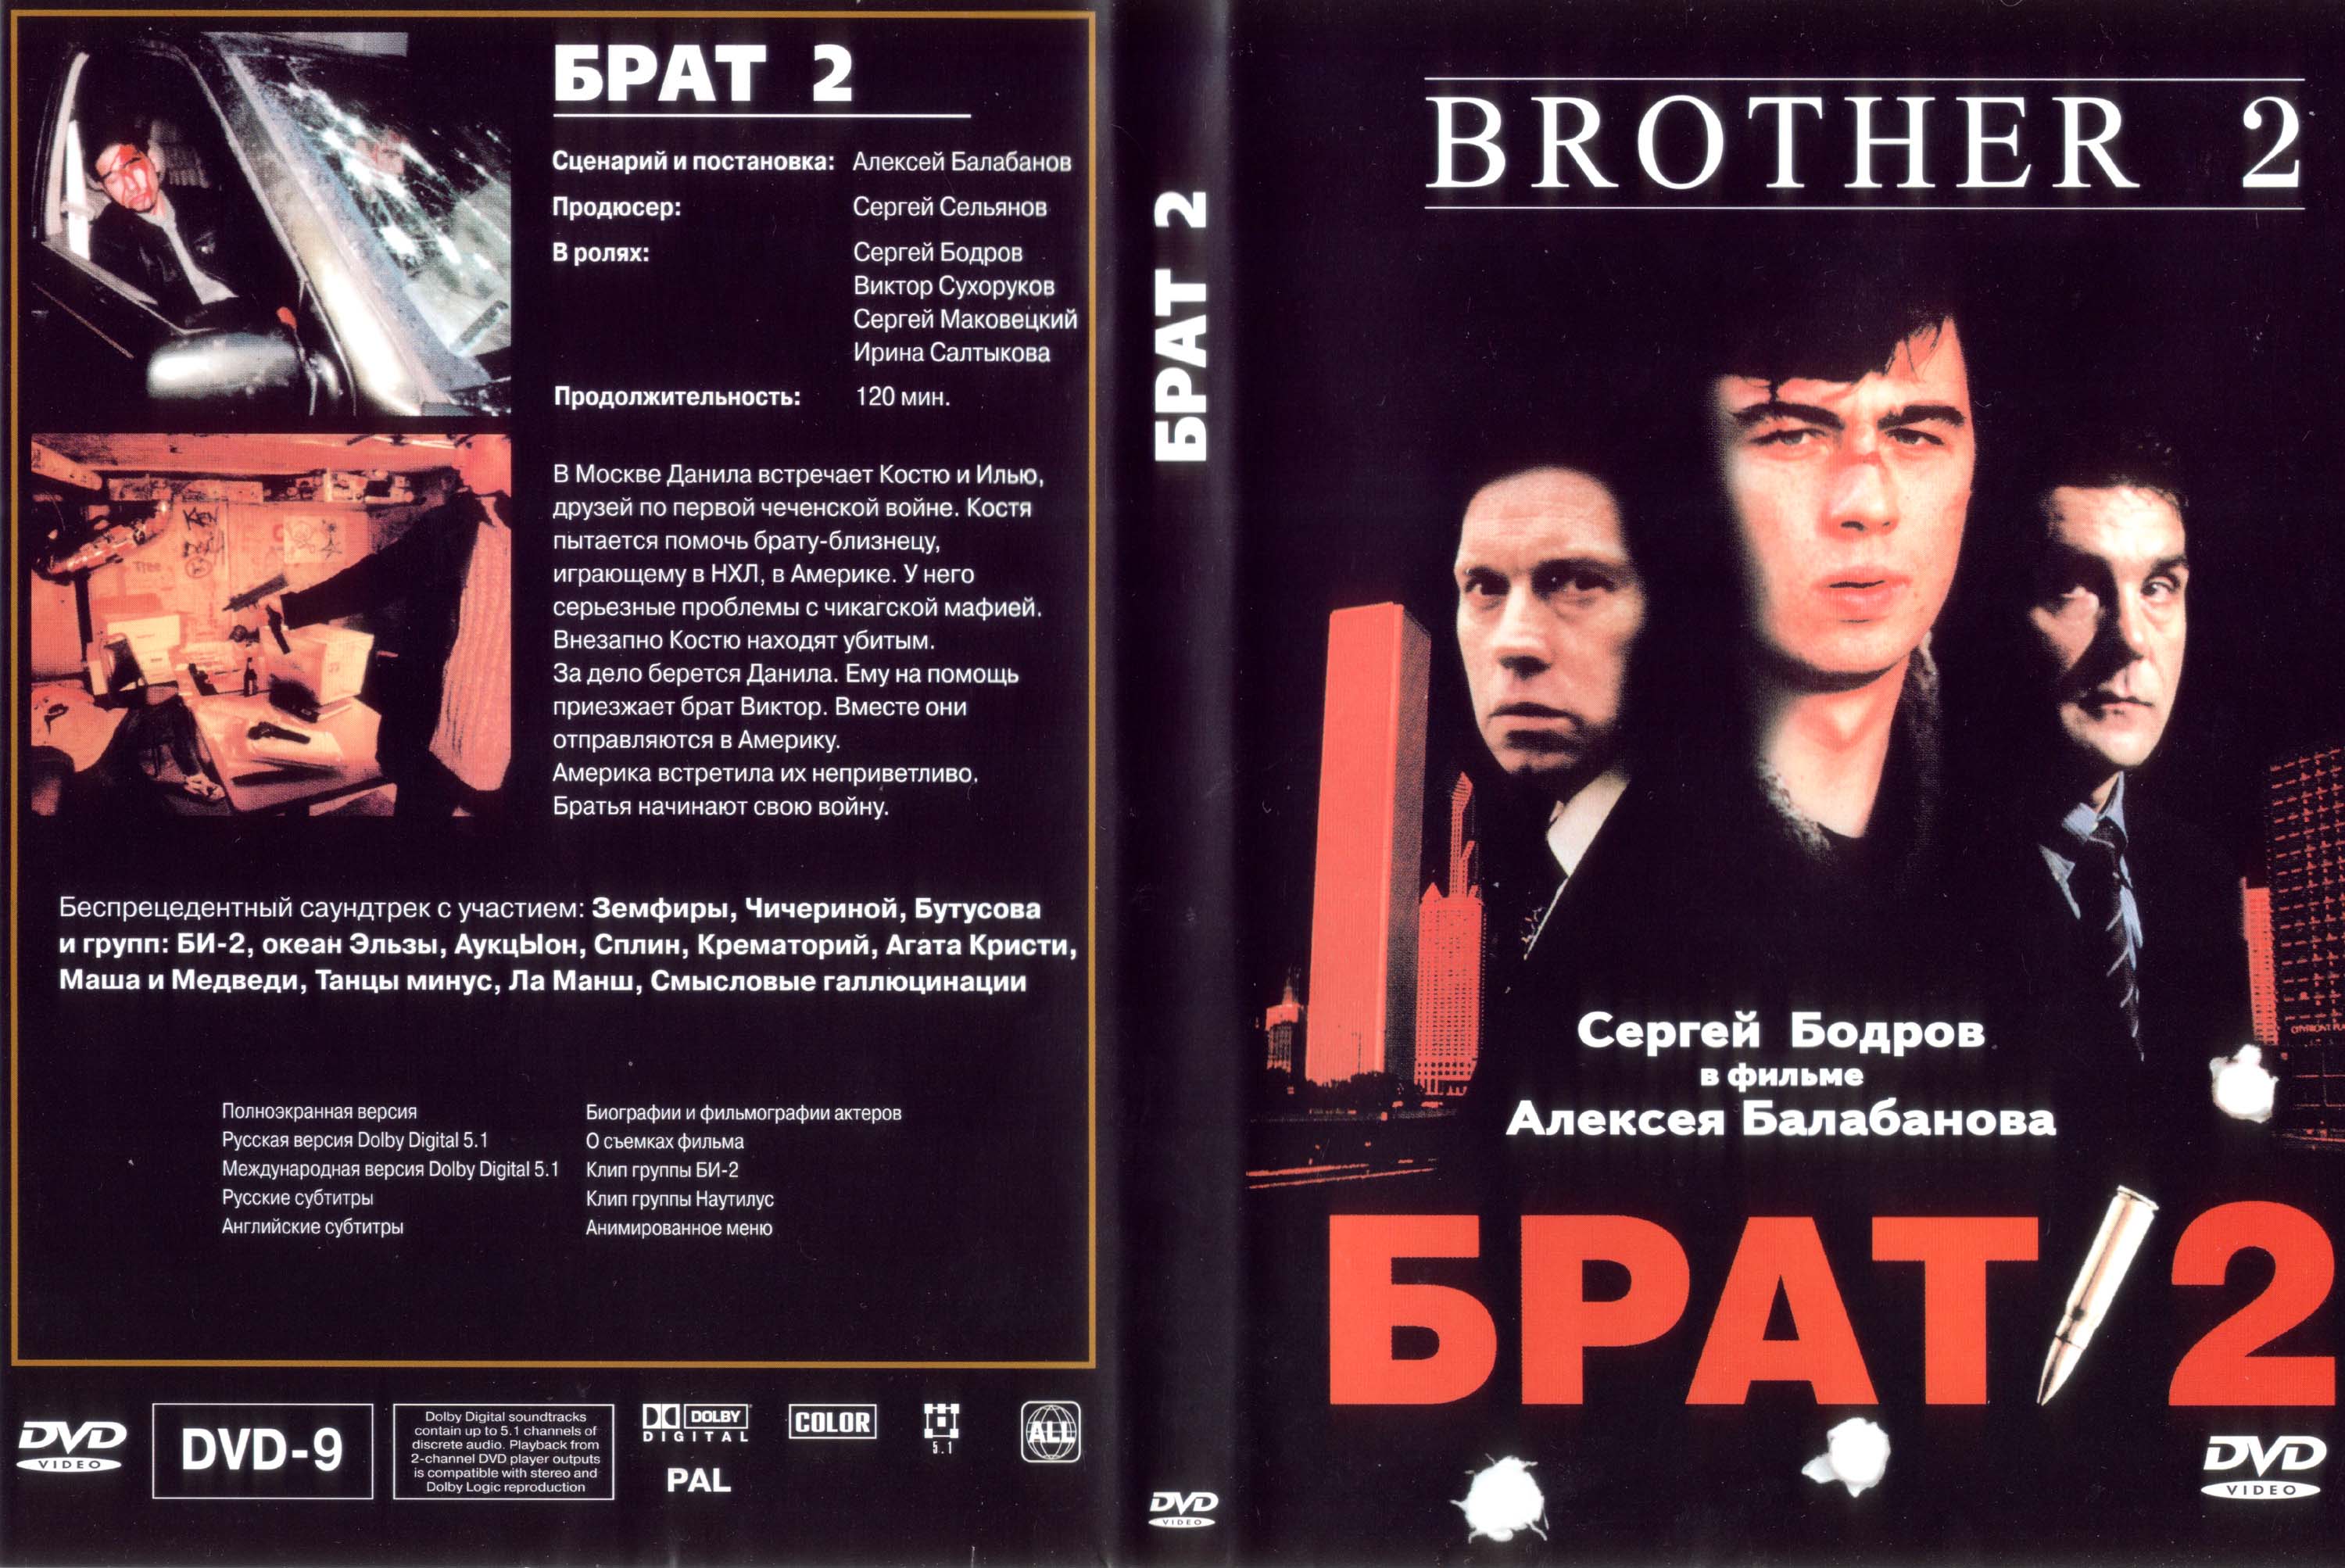 Брат 2 игра купить. Брат 2 2000 Балабанова. Брат 1 и 2 двд обложка. Cover DVD брат 2 2000. Брат 2 обложка диска.